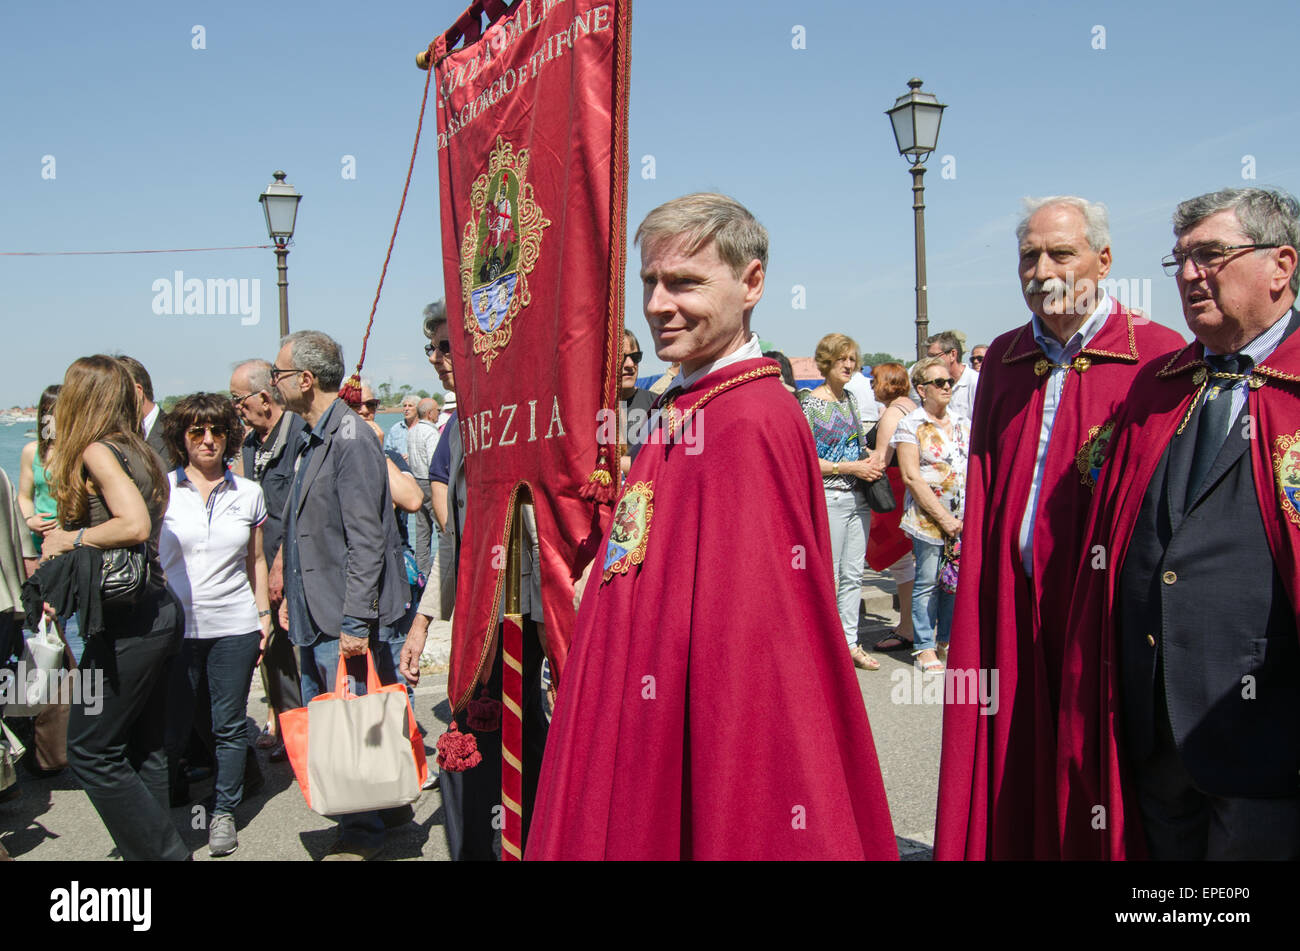 Venise, Italie - 17 MAI 2015 : Festa della Sensa parade avec les membres de la Scuola dei SS Giorgio e Trifone dans des robes. Banque D'Images